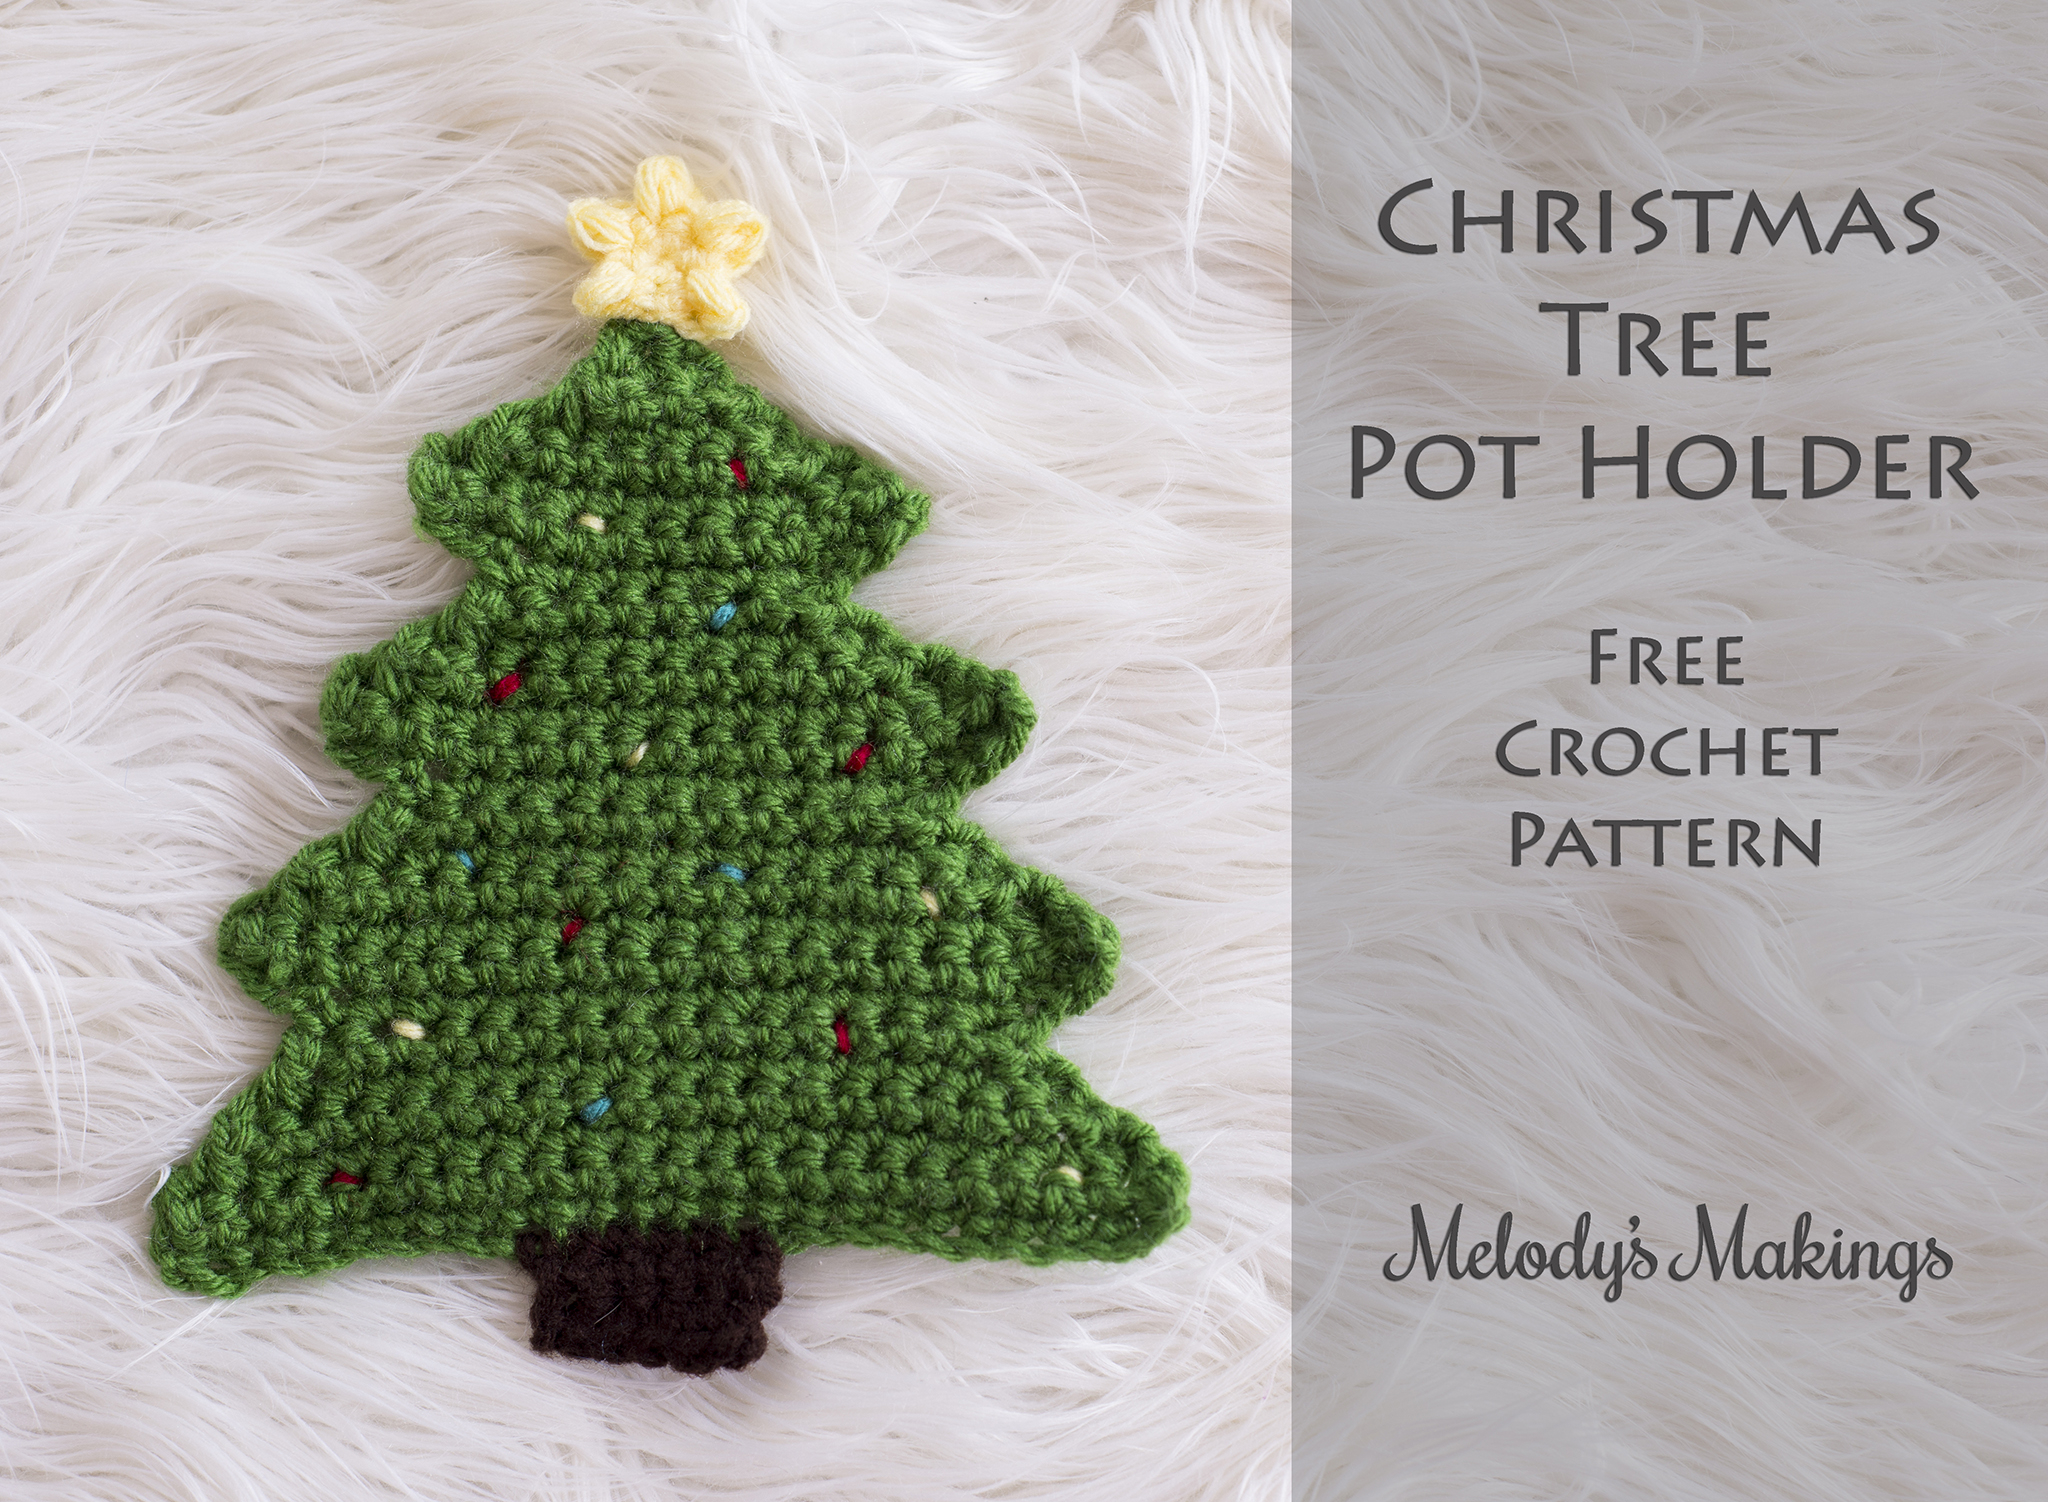 Knit Potholder Patterns Christmas Tree Pot Holder Pattern Crochet Knit Melodys Makings